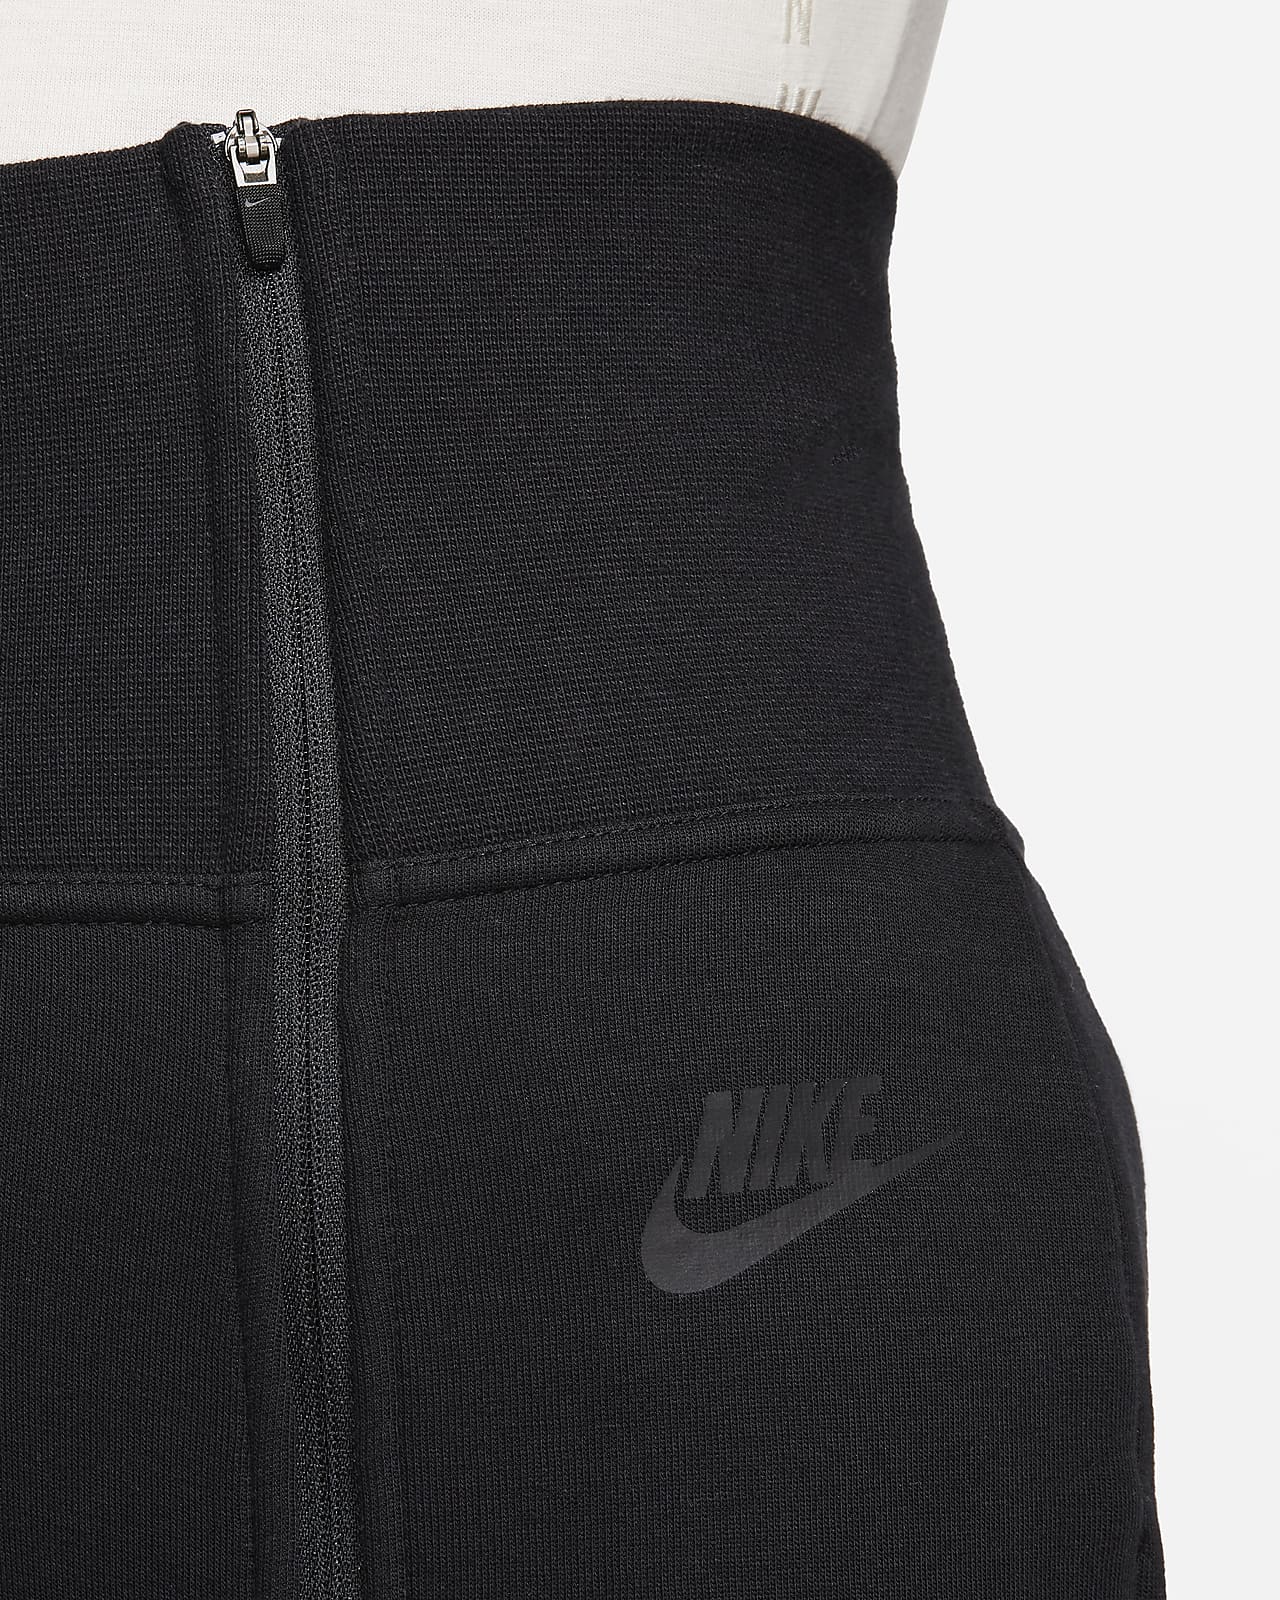 Nike Tech Fleece Joggers Size M Purple Sportswear Womens Sweatpants CW4294  482